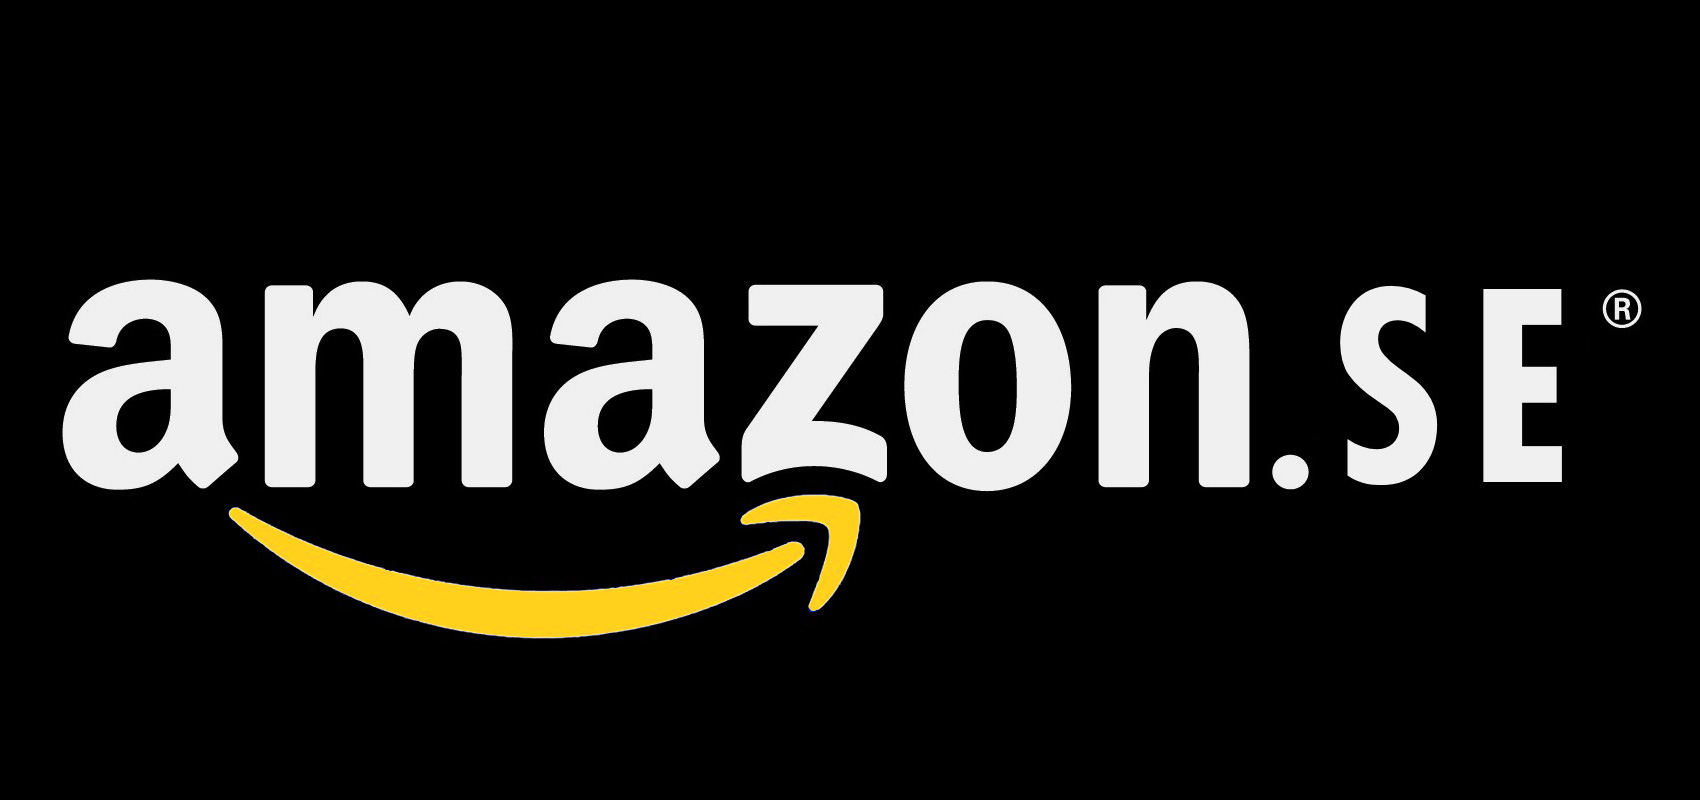 Amazon håller inte på att starta e-handel i Sverige